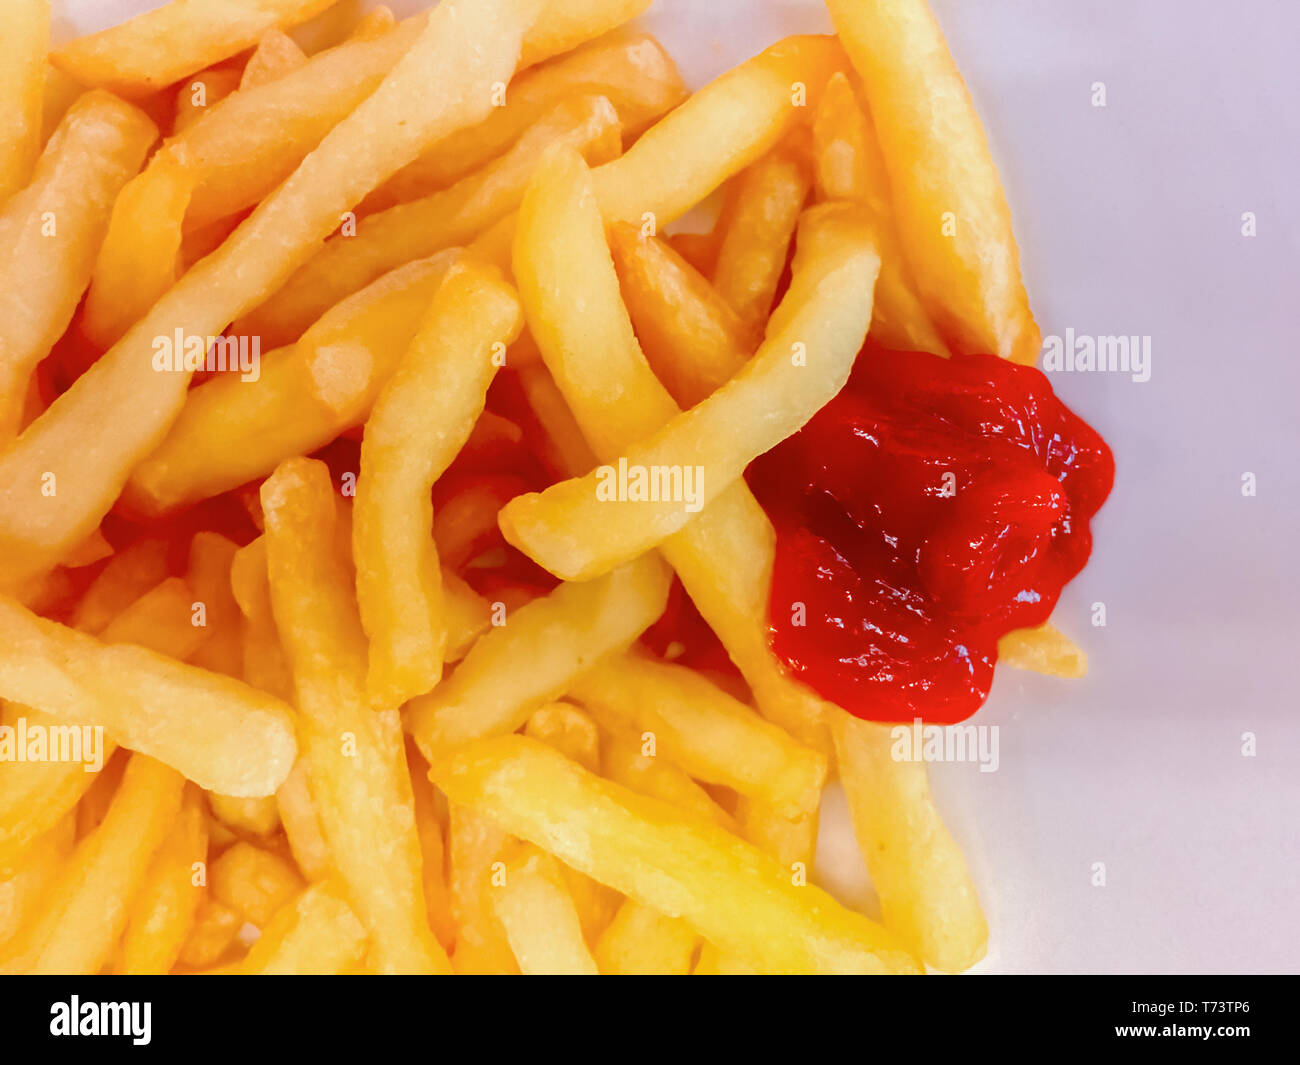 Vista ravvicinata di patate fritte con ketchup salsa. Il cibo spazzatura e uno stile di vita poco salutare Foto Stock